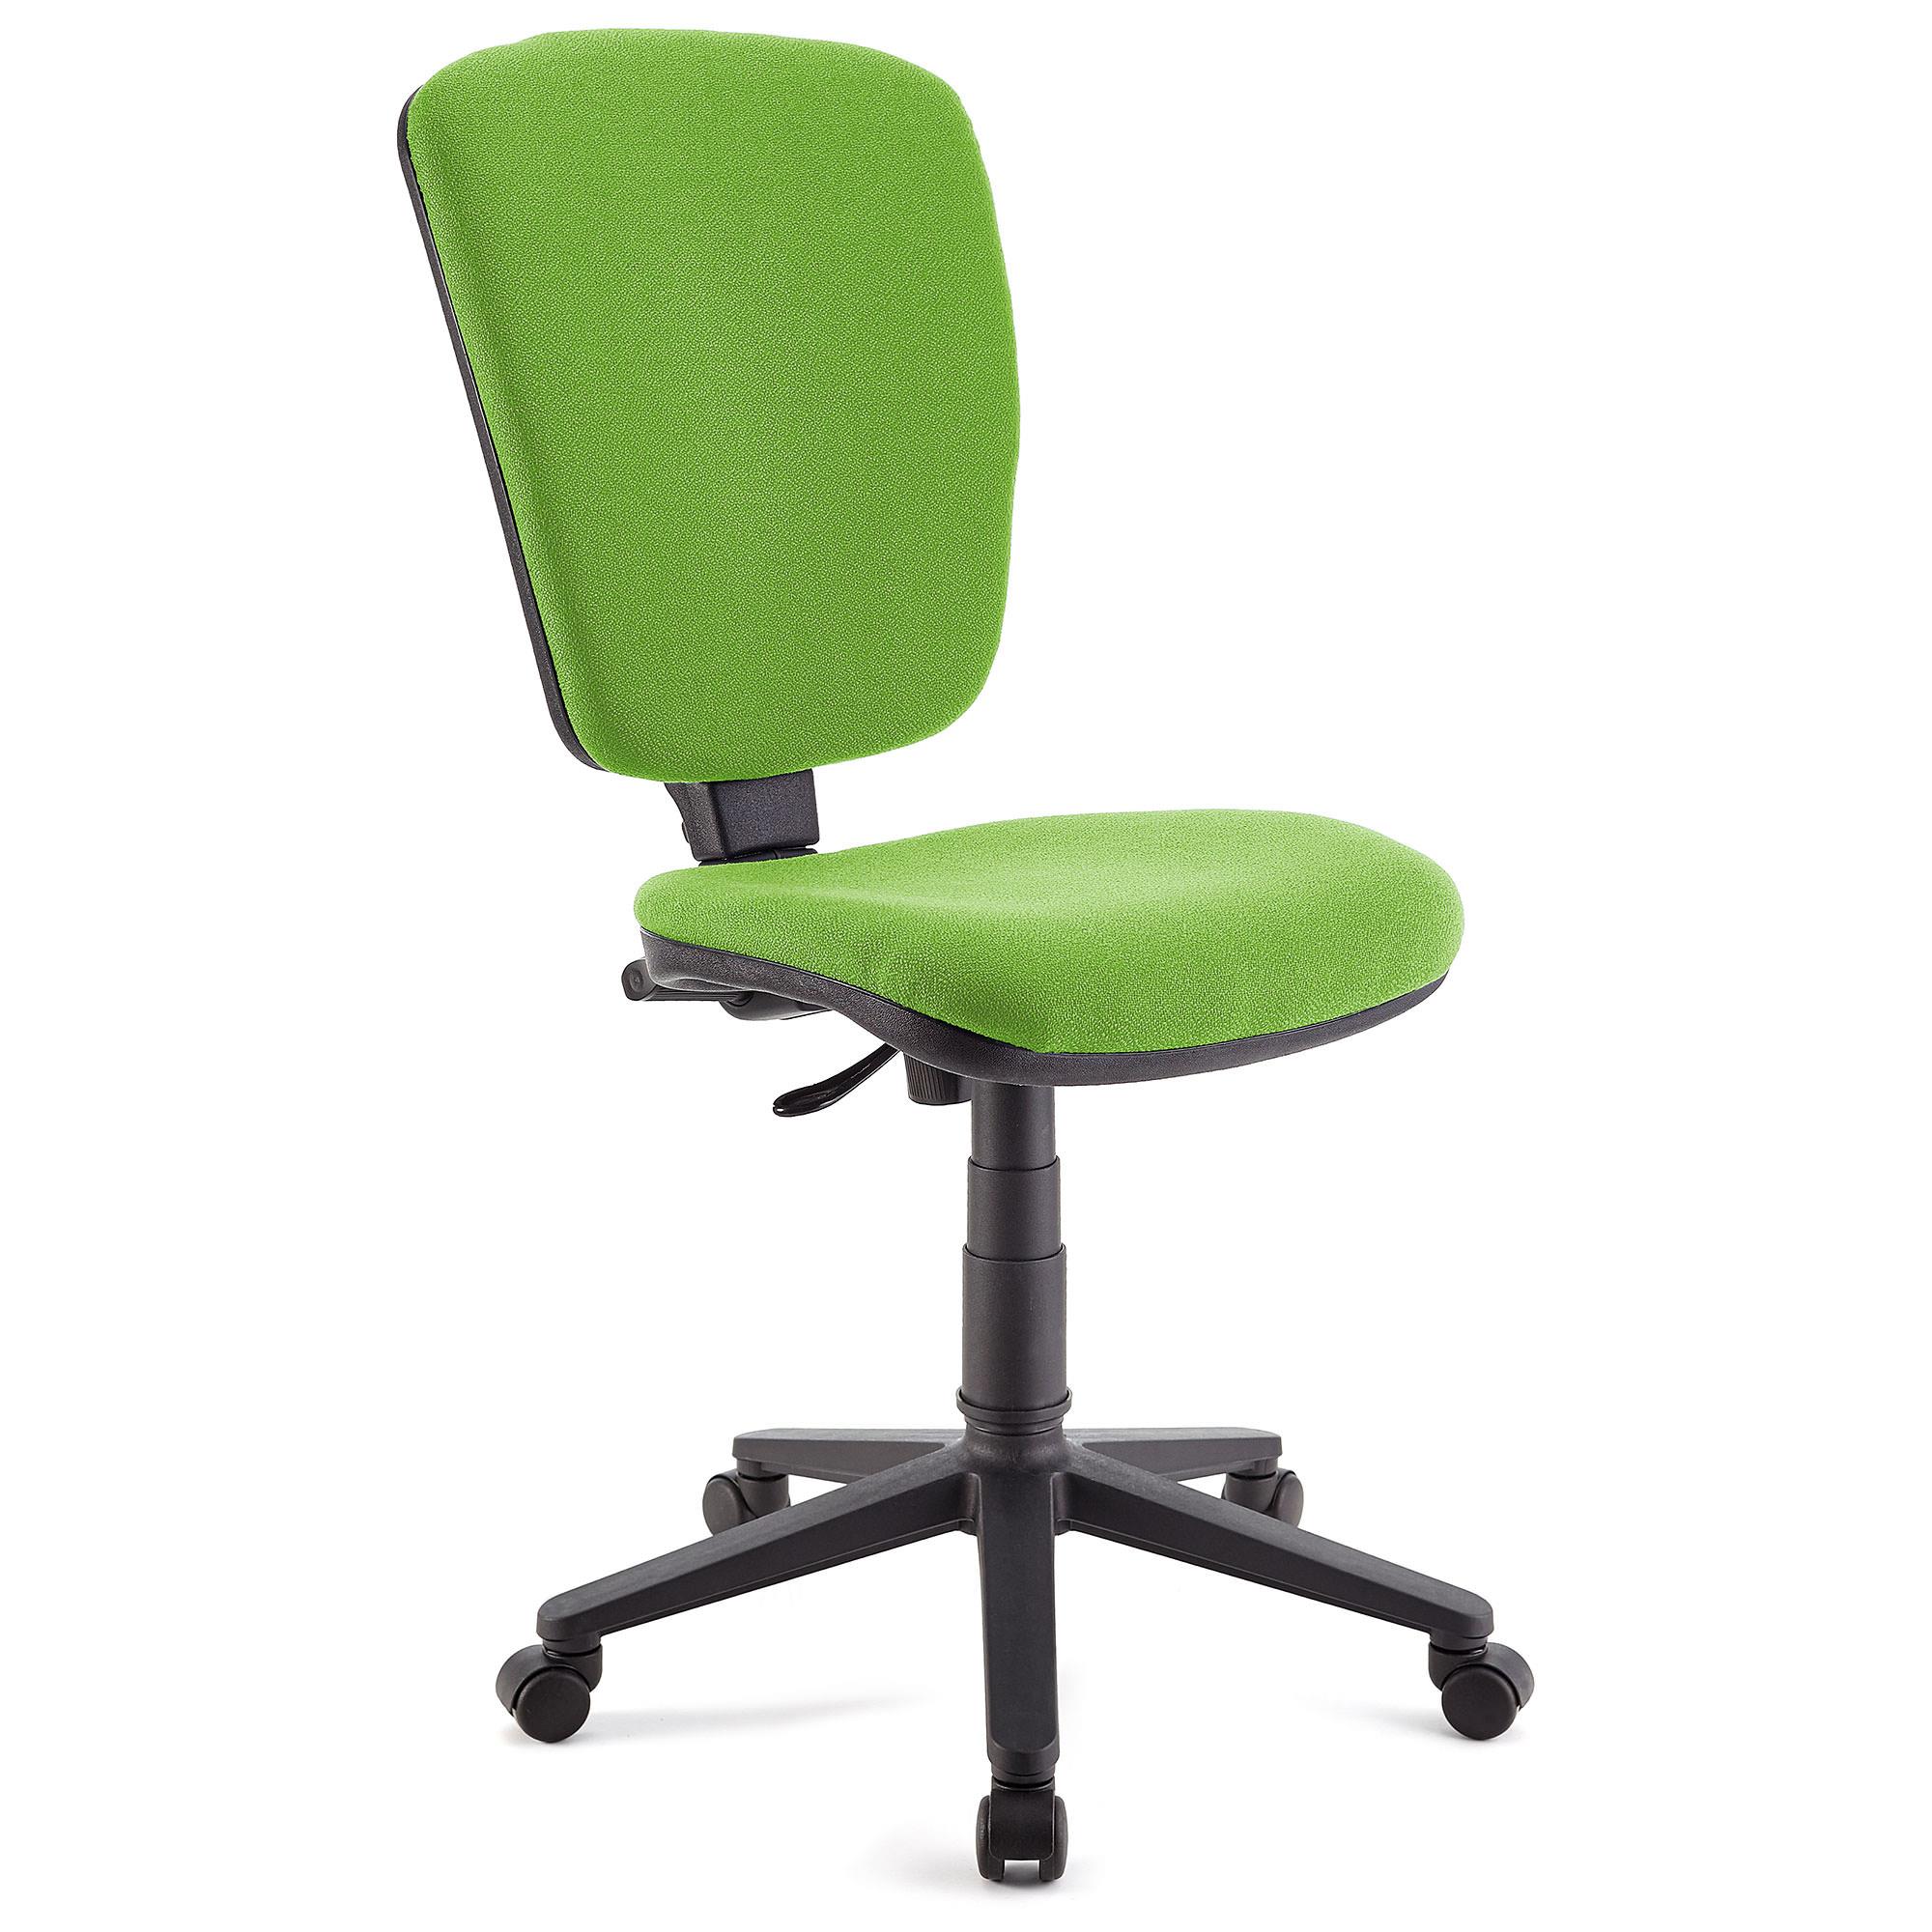 Cadeira de escritório CALIPSO SEM BRAÇOS, Encosto ajustável. Em Pano Resistente, Cor Verde Lima